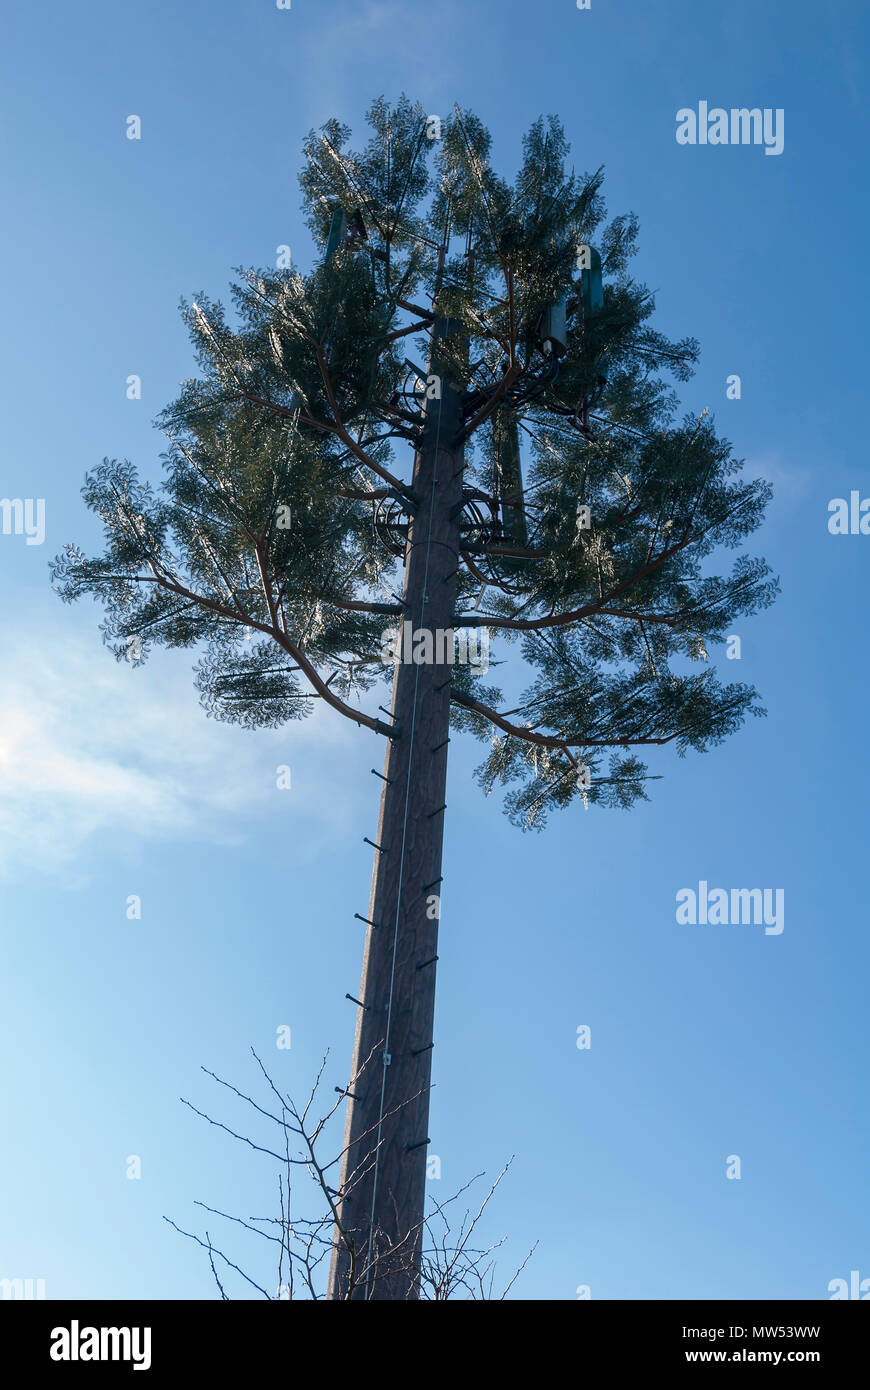 Telefono cellulare imitando il montante di una struttura ad albero Foto Stock